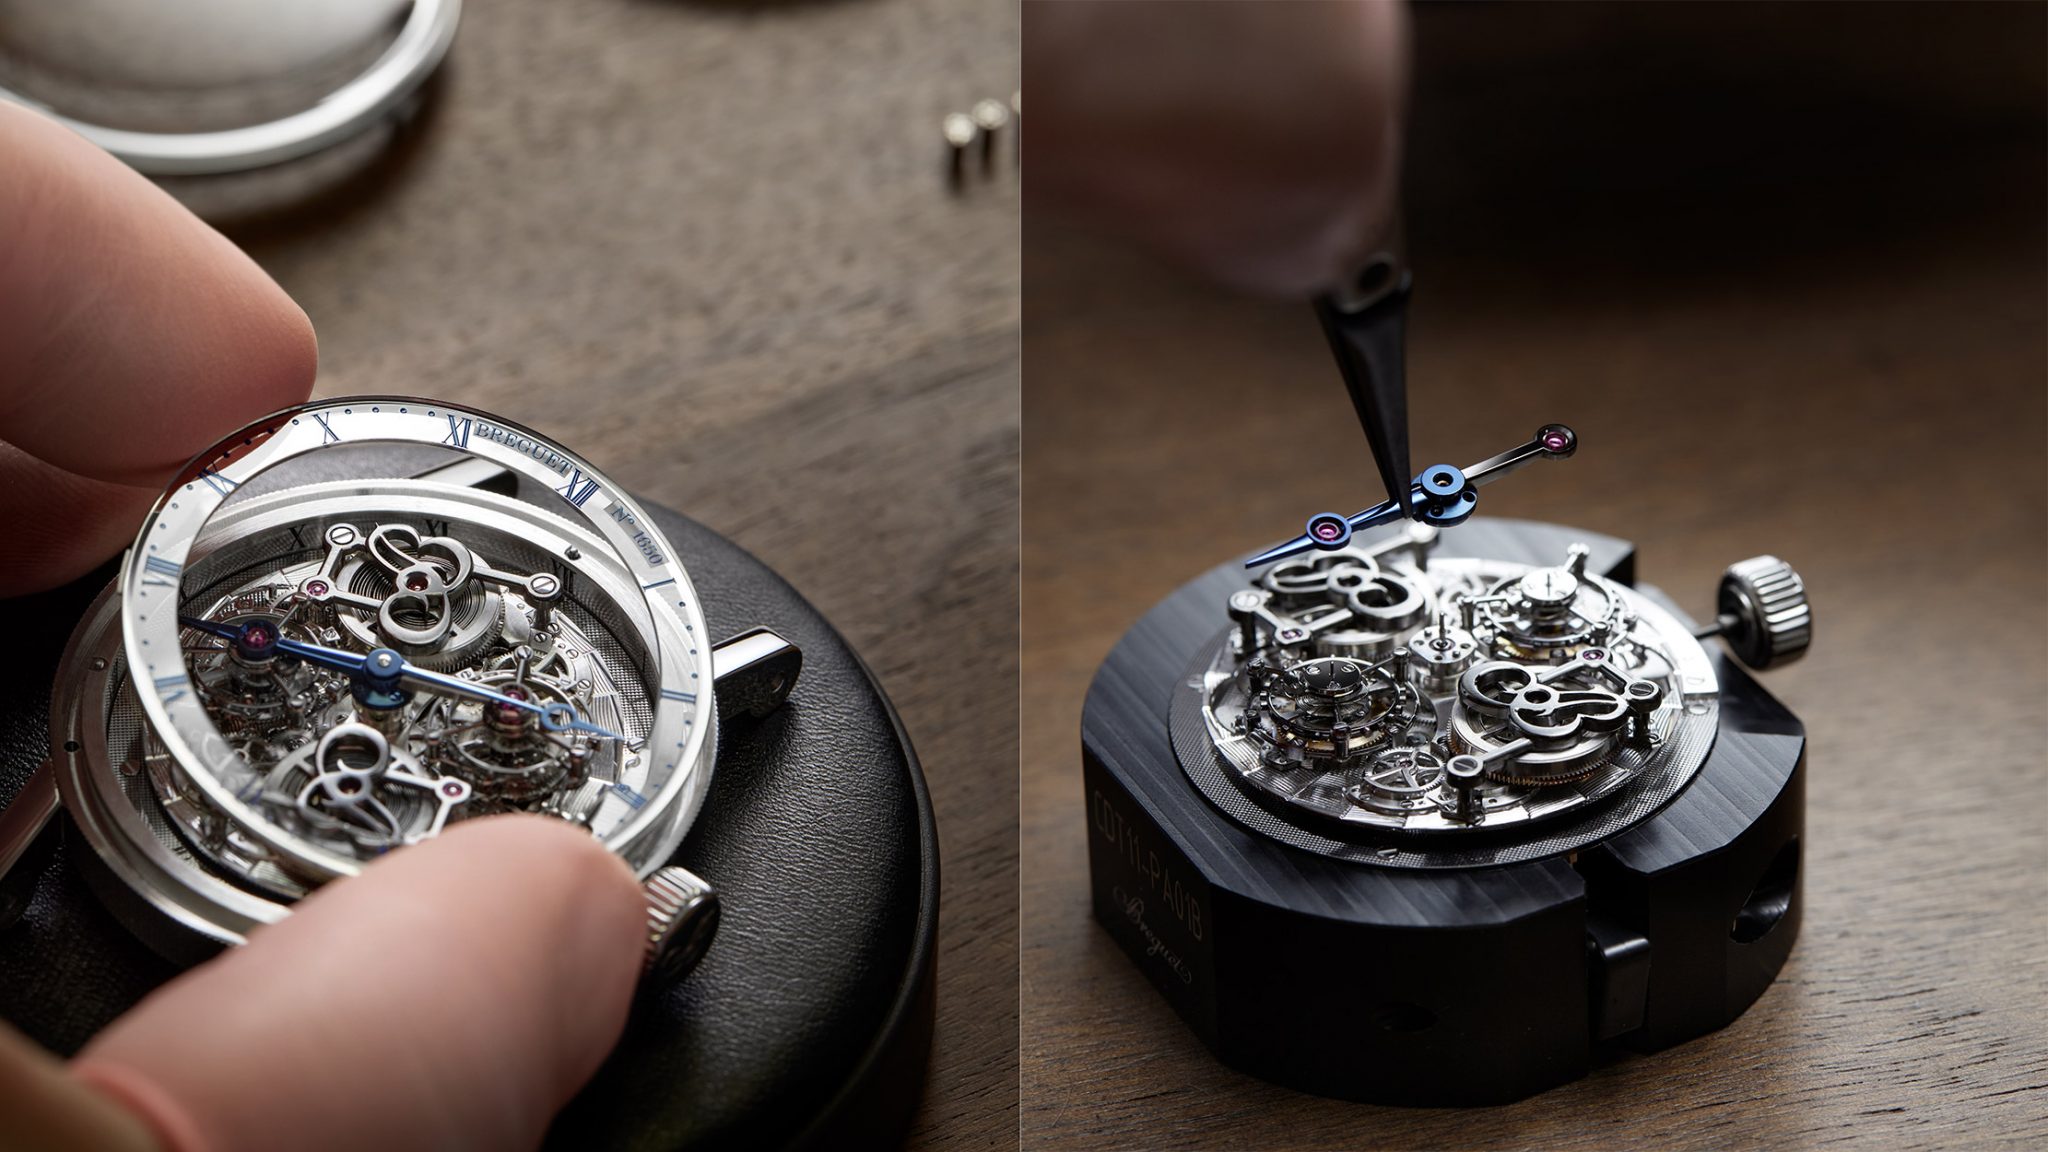 Breguet Classique Doppeltourbillon 5345 Quai de l’Horloge manufacture caliber